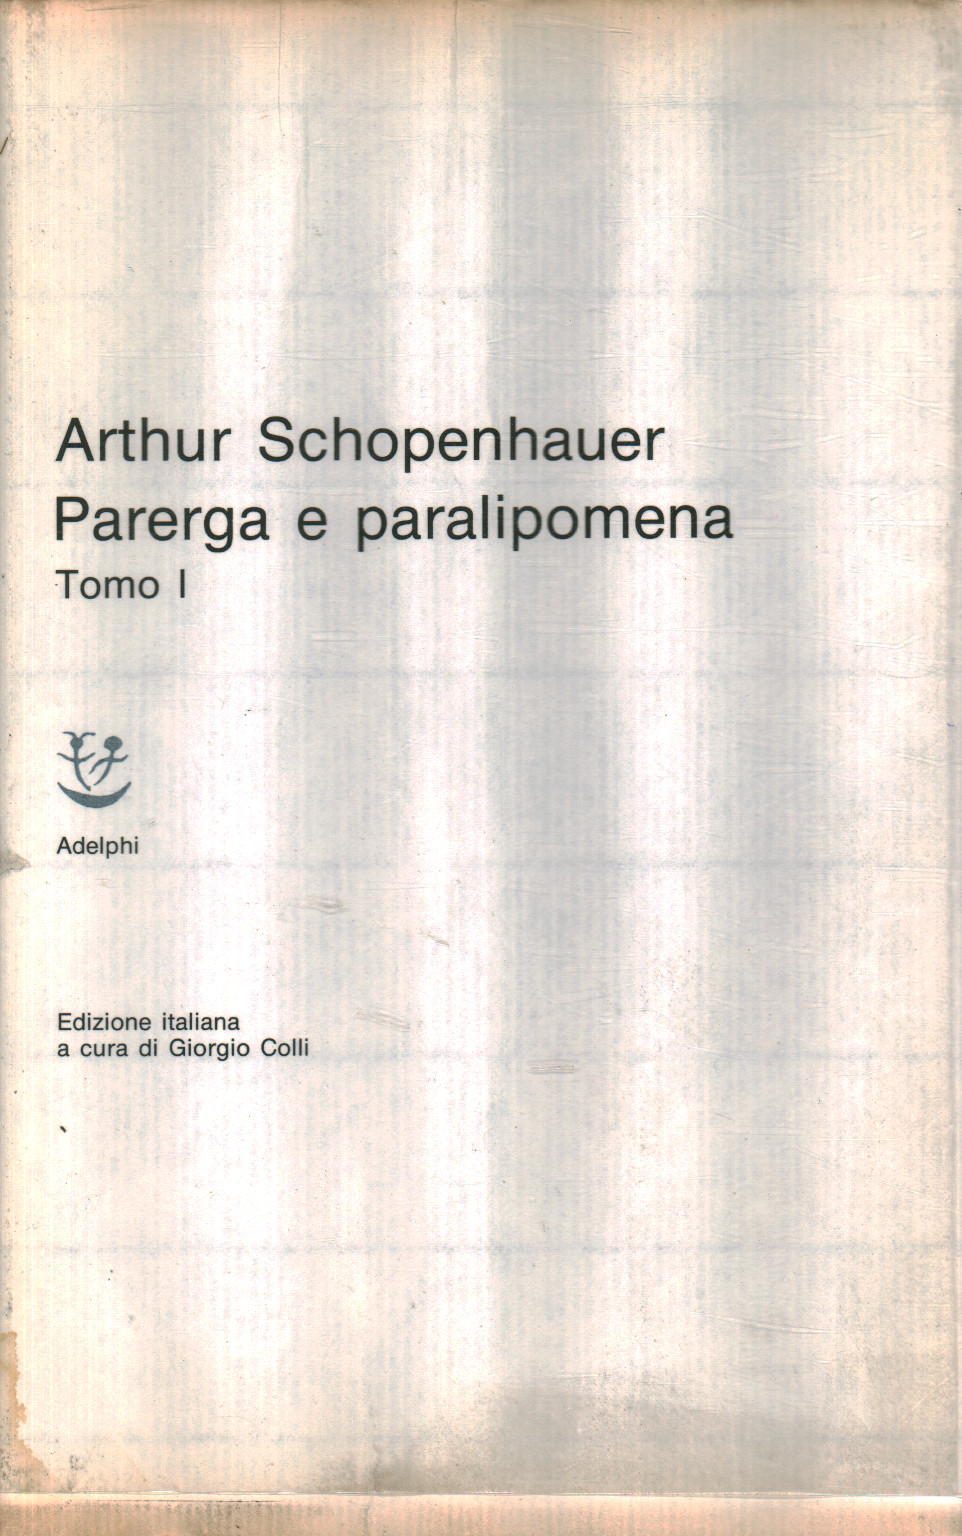 Parerga und paralipomena (Band 1), Arthur Schopenhauer